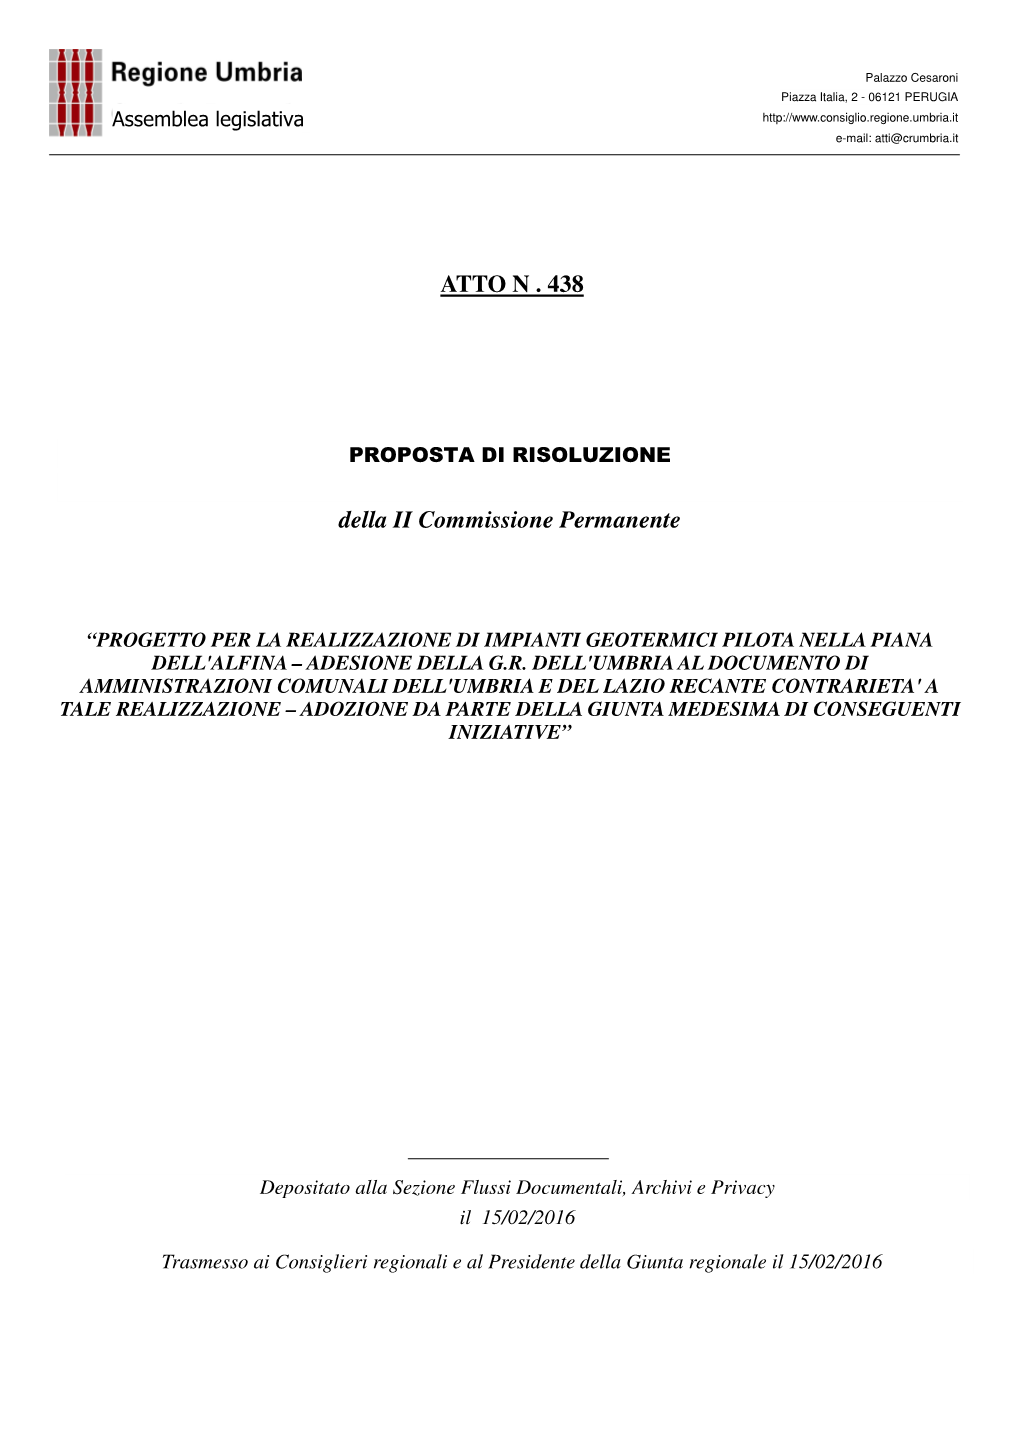 ATTO N . 438 Della II Commissione Permanente